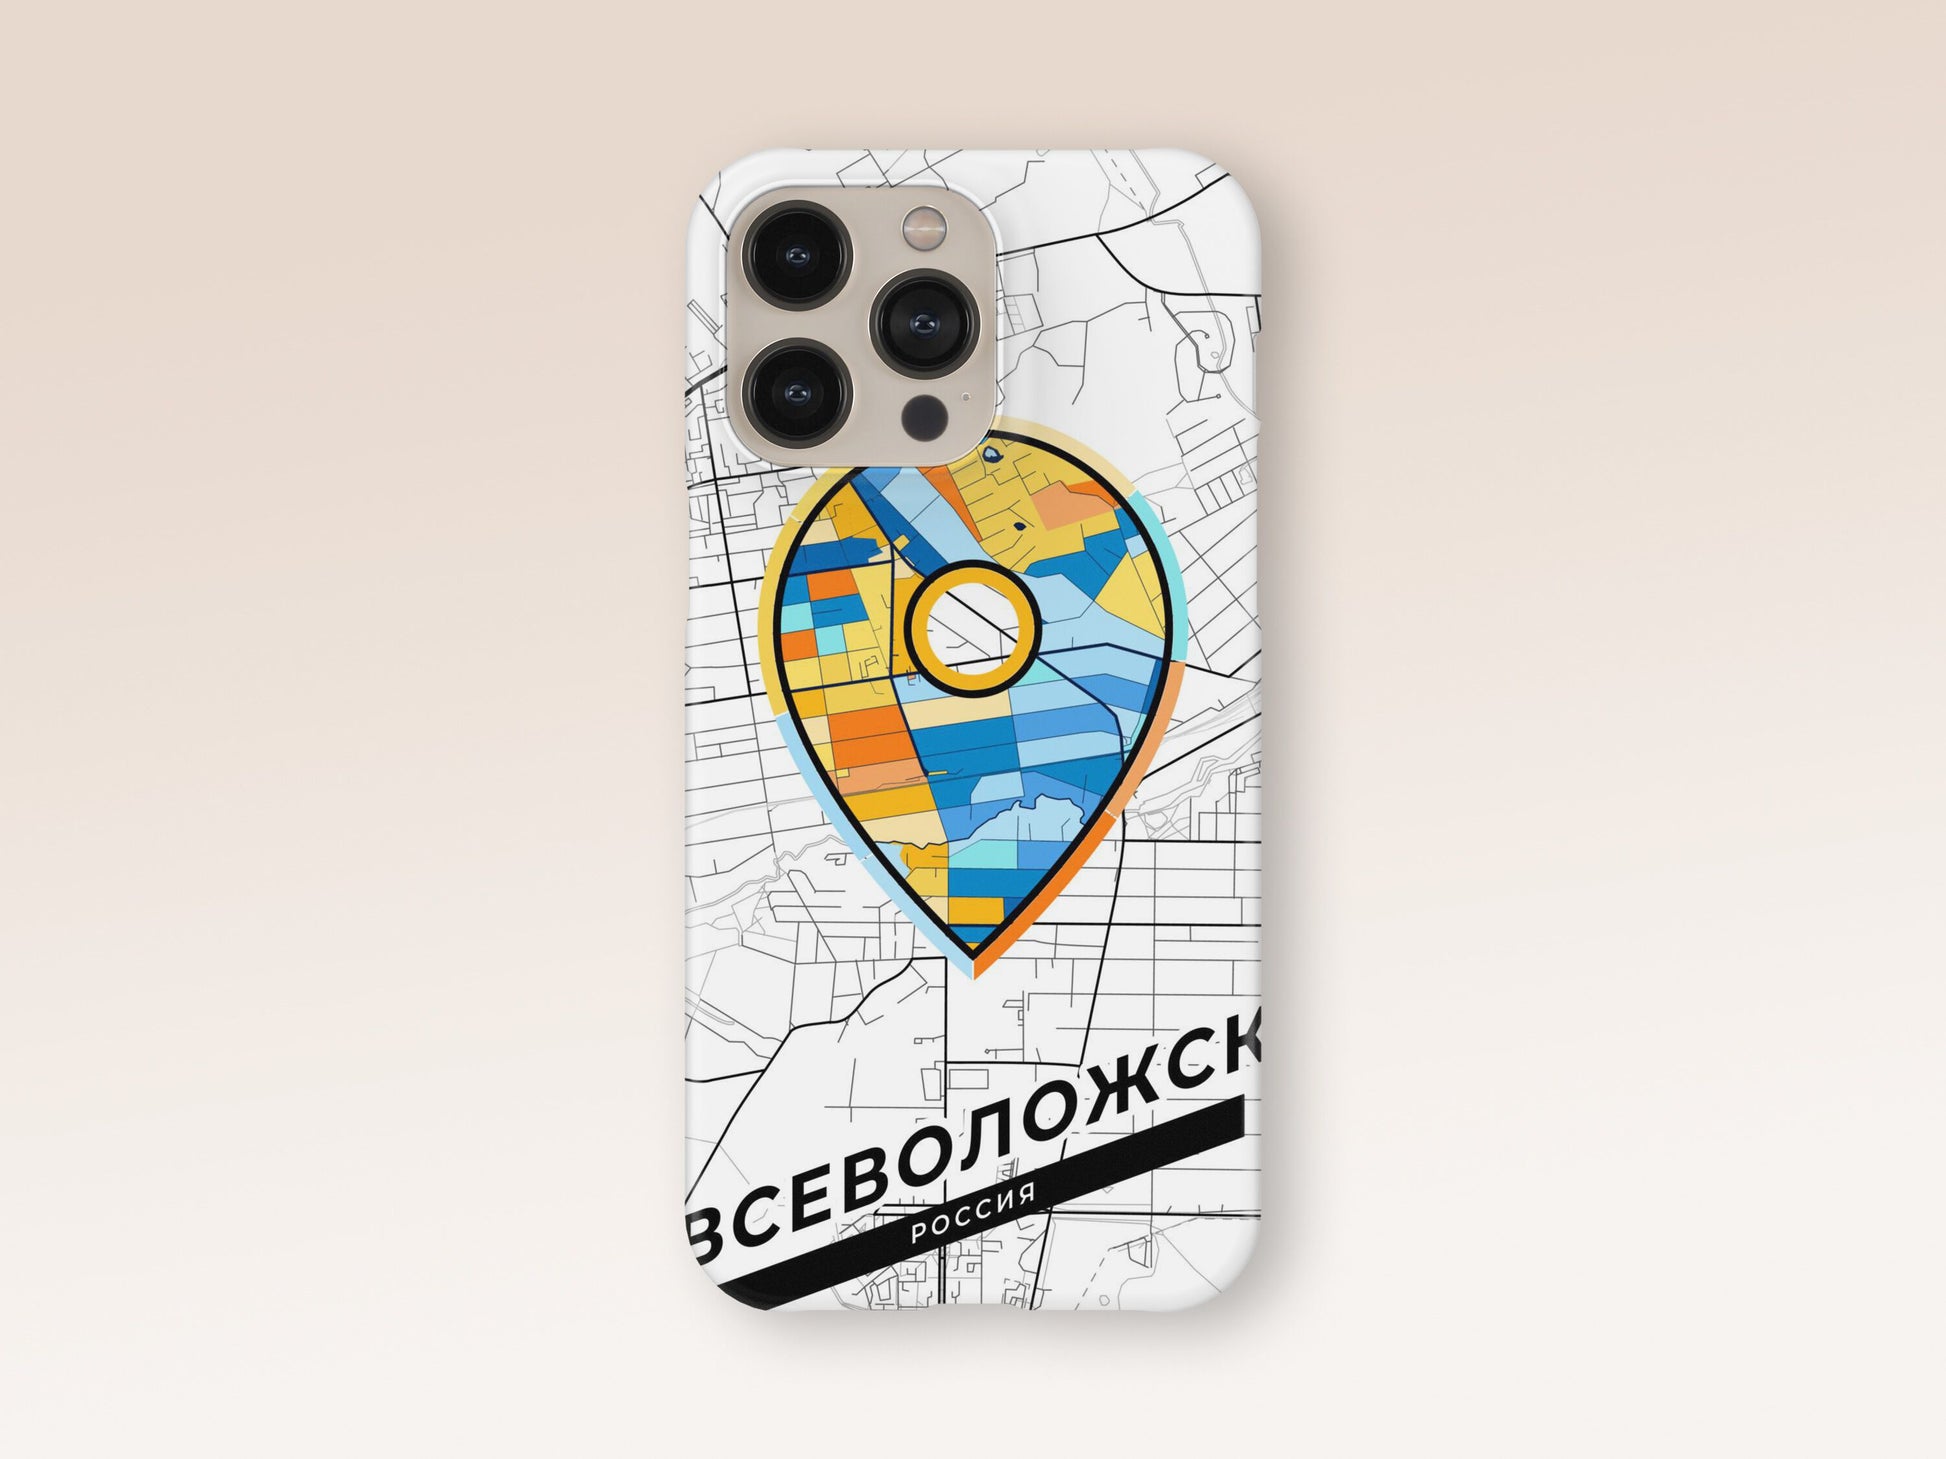 Vsevolozhsk Russia slim phone case with colorful icon 1